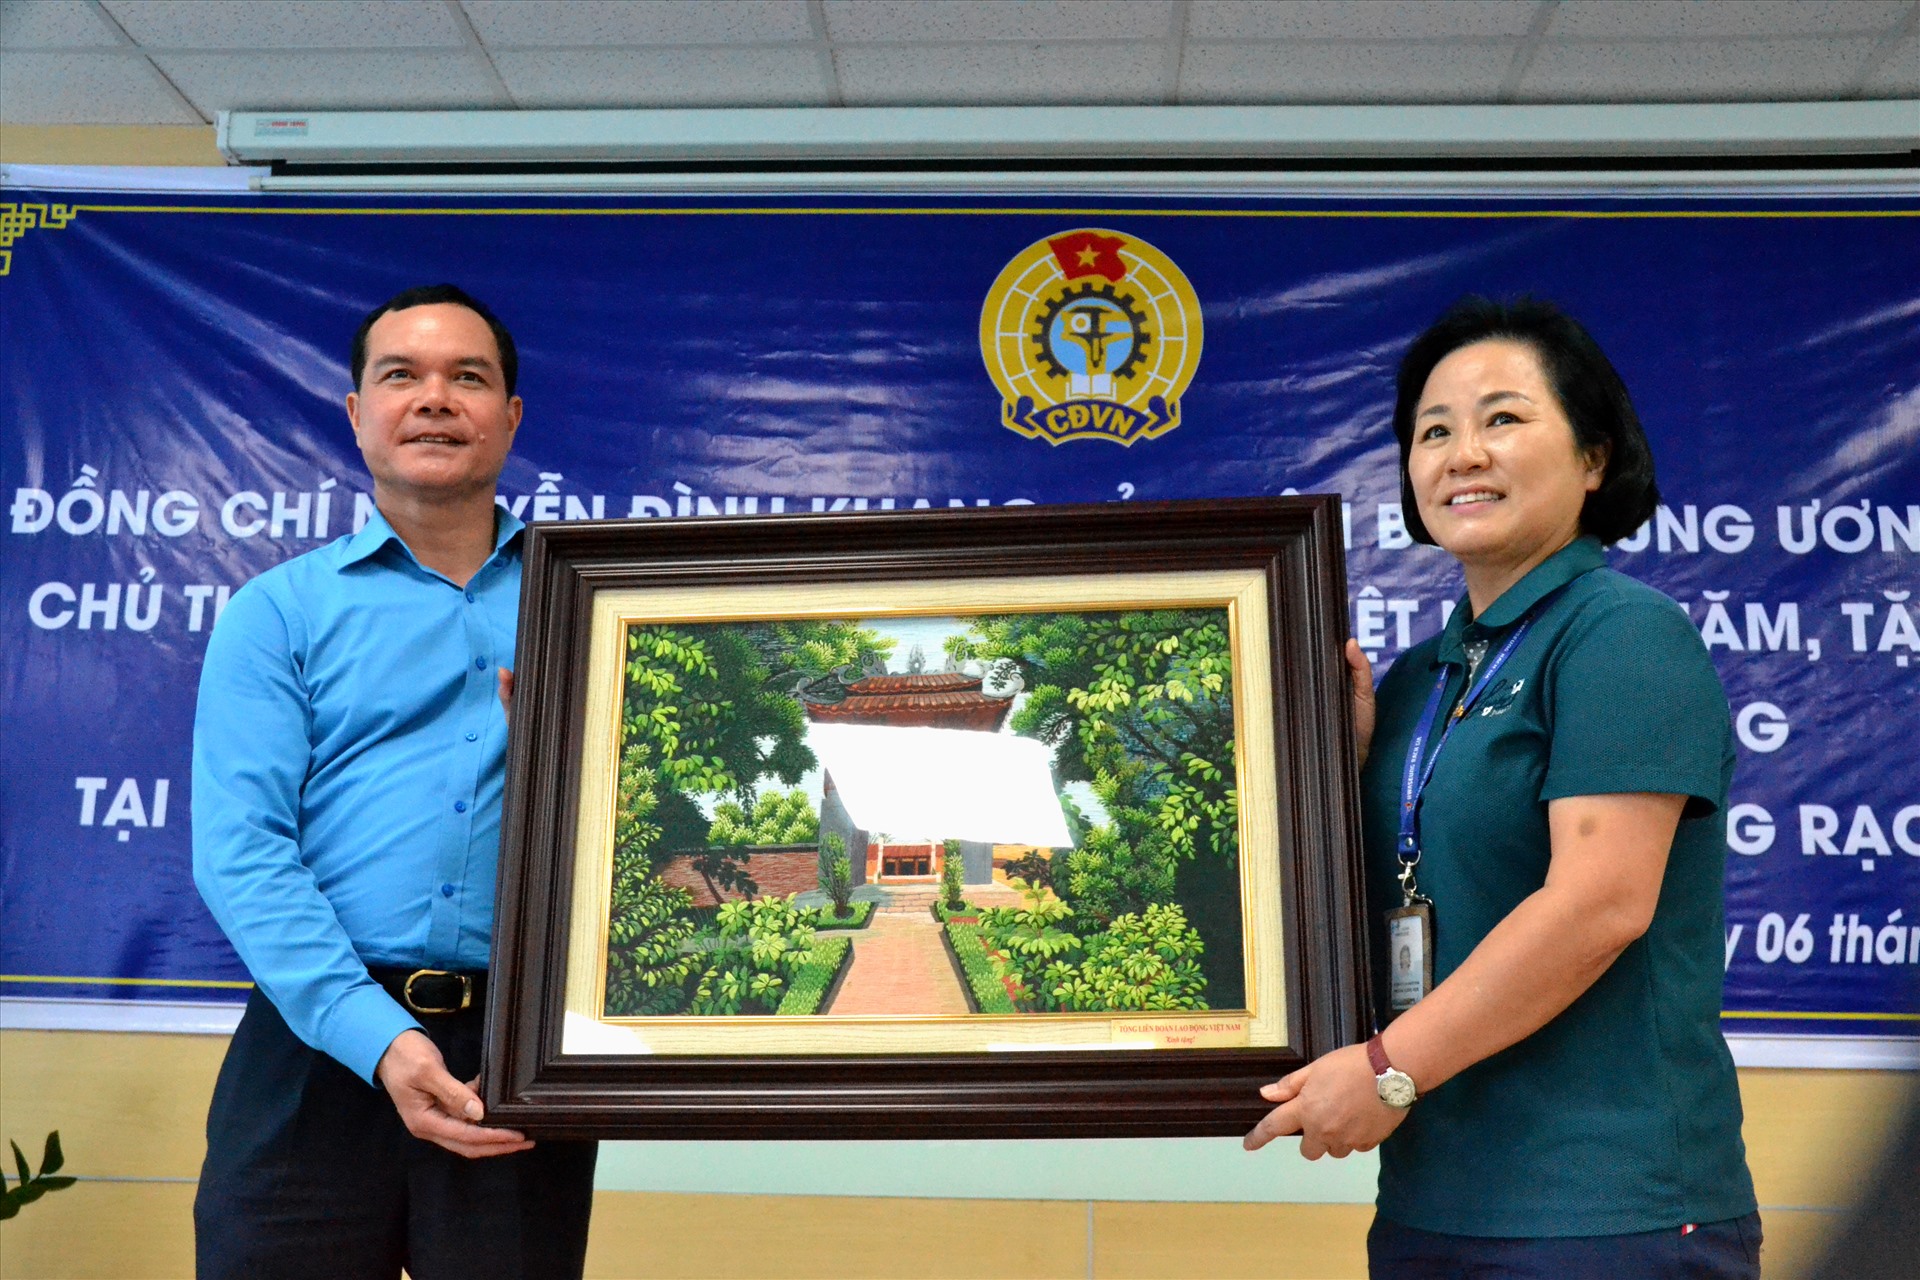 Chủ tịch Tổng LĐLĐ Việt Nam tặng quà lưu niệm cho Công ty TNHH Hwaesung Rạch Giá. Ảnh: LT